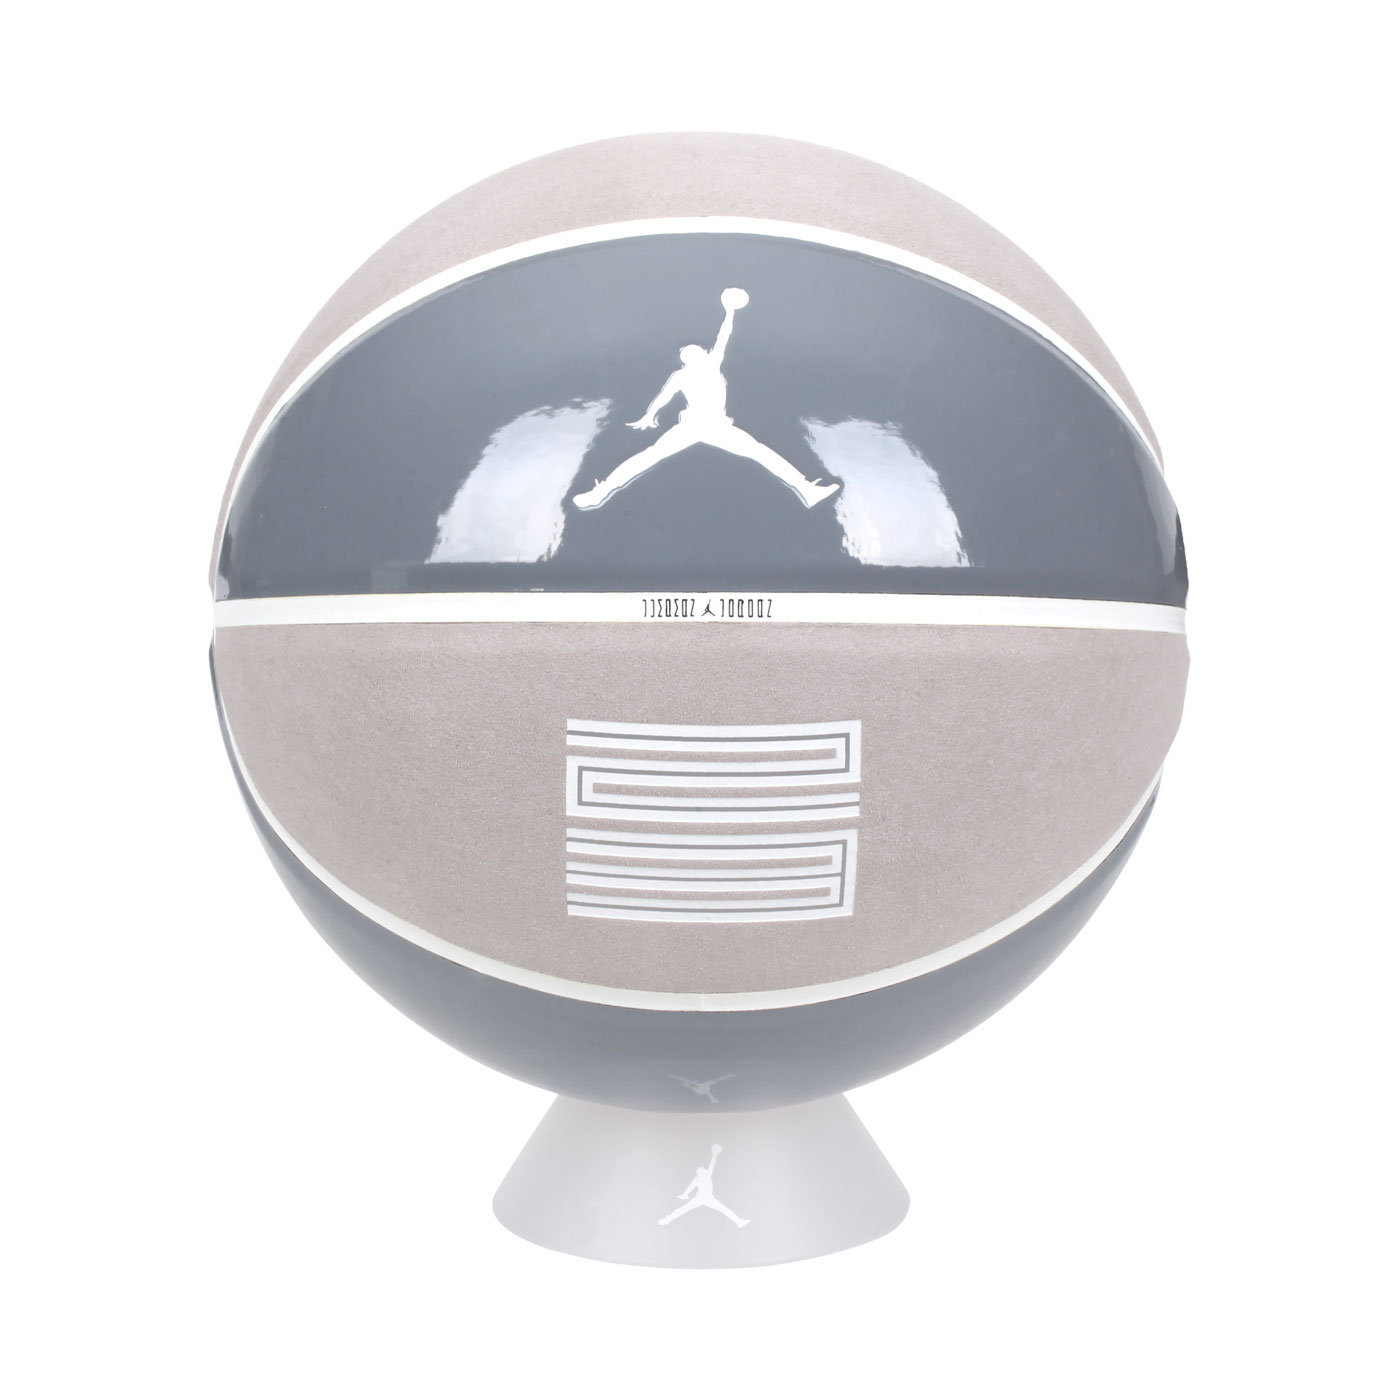 NIKE JORDAN PREMIUM BASKETBALL 8P 7號籃球 (附盒子) J100308705207 - 灰白